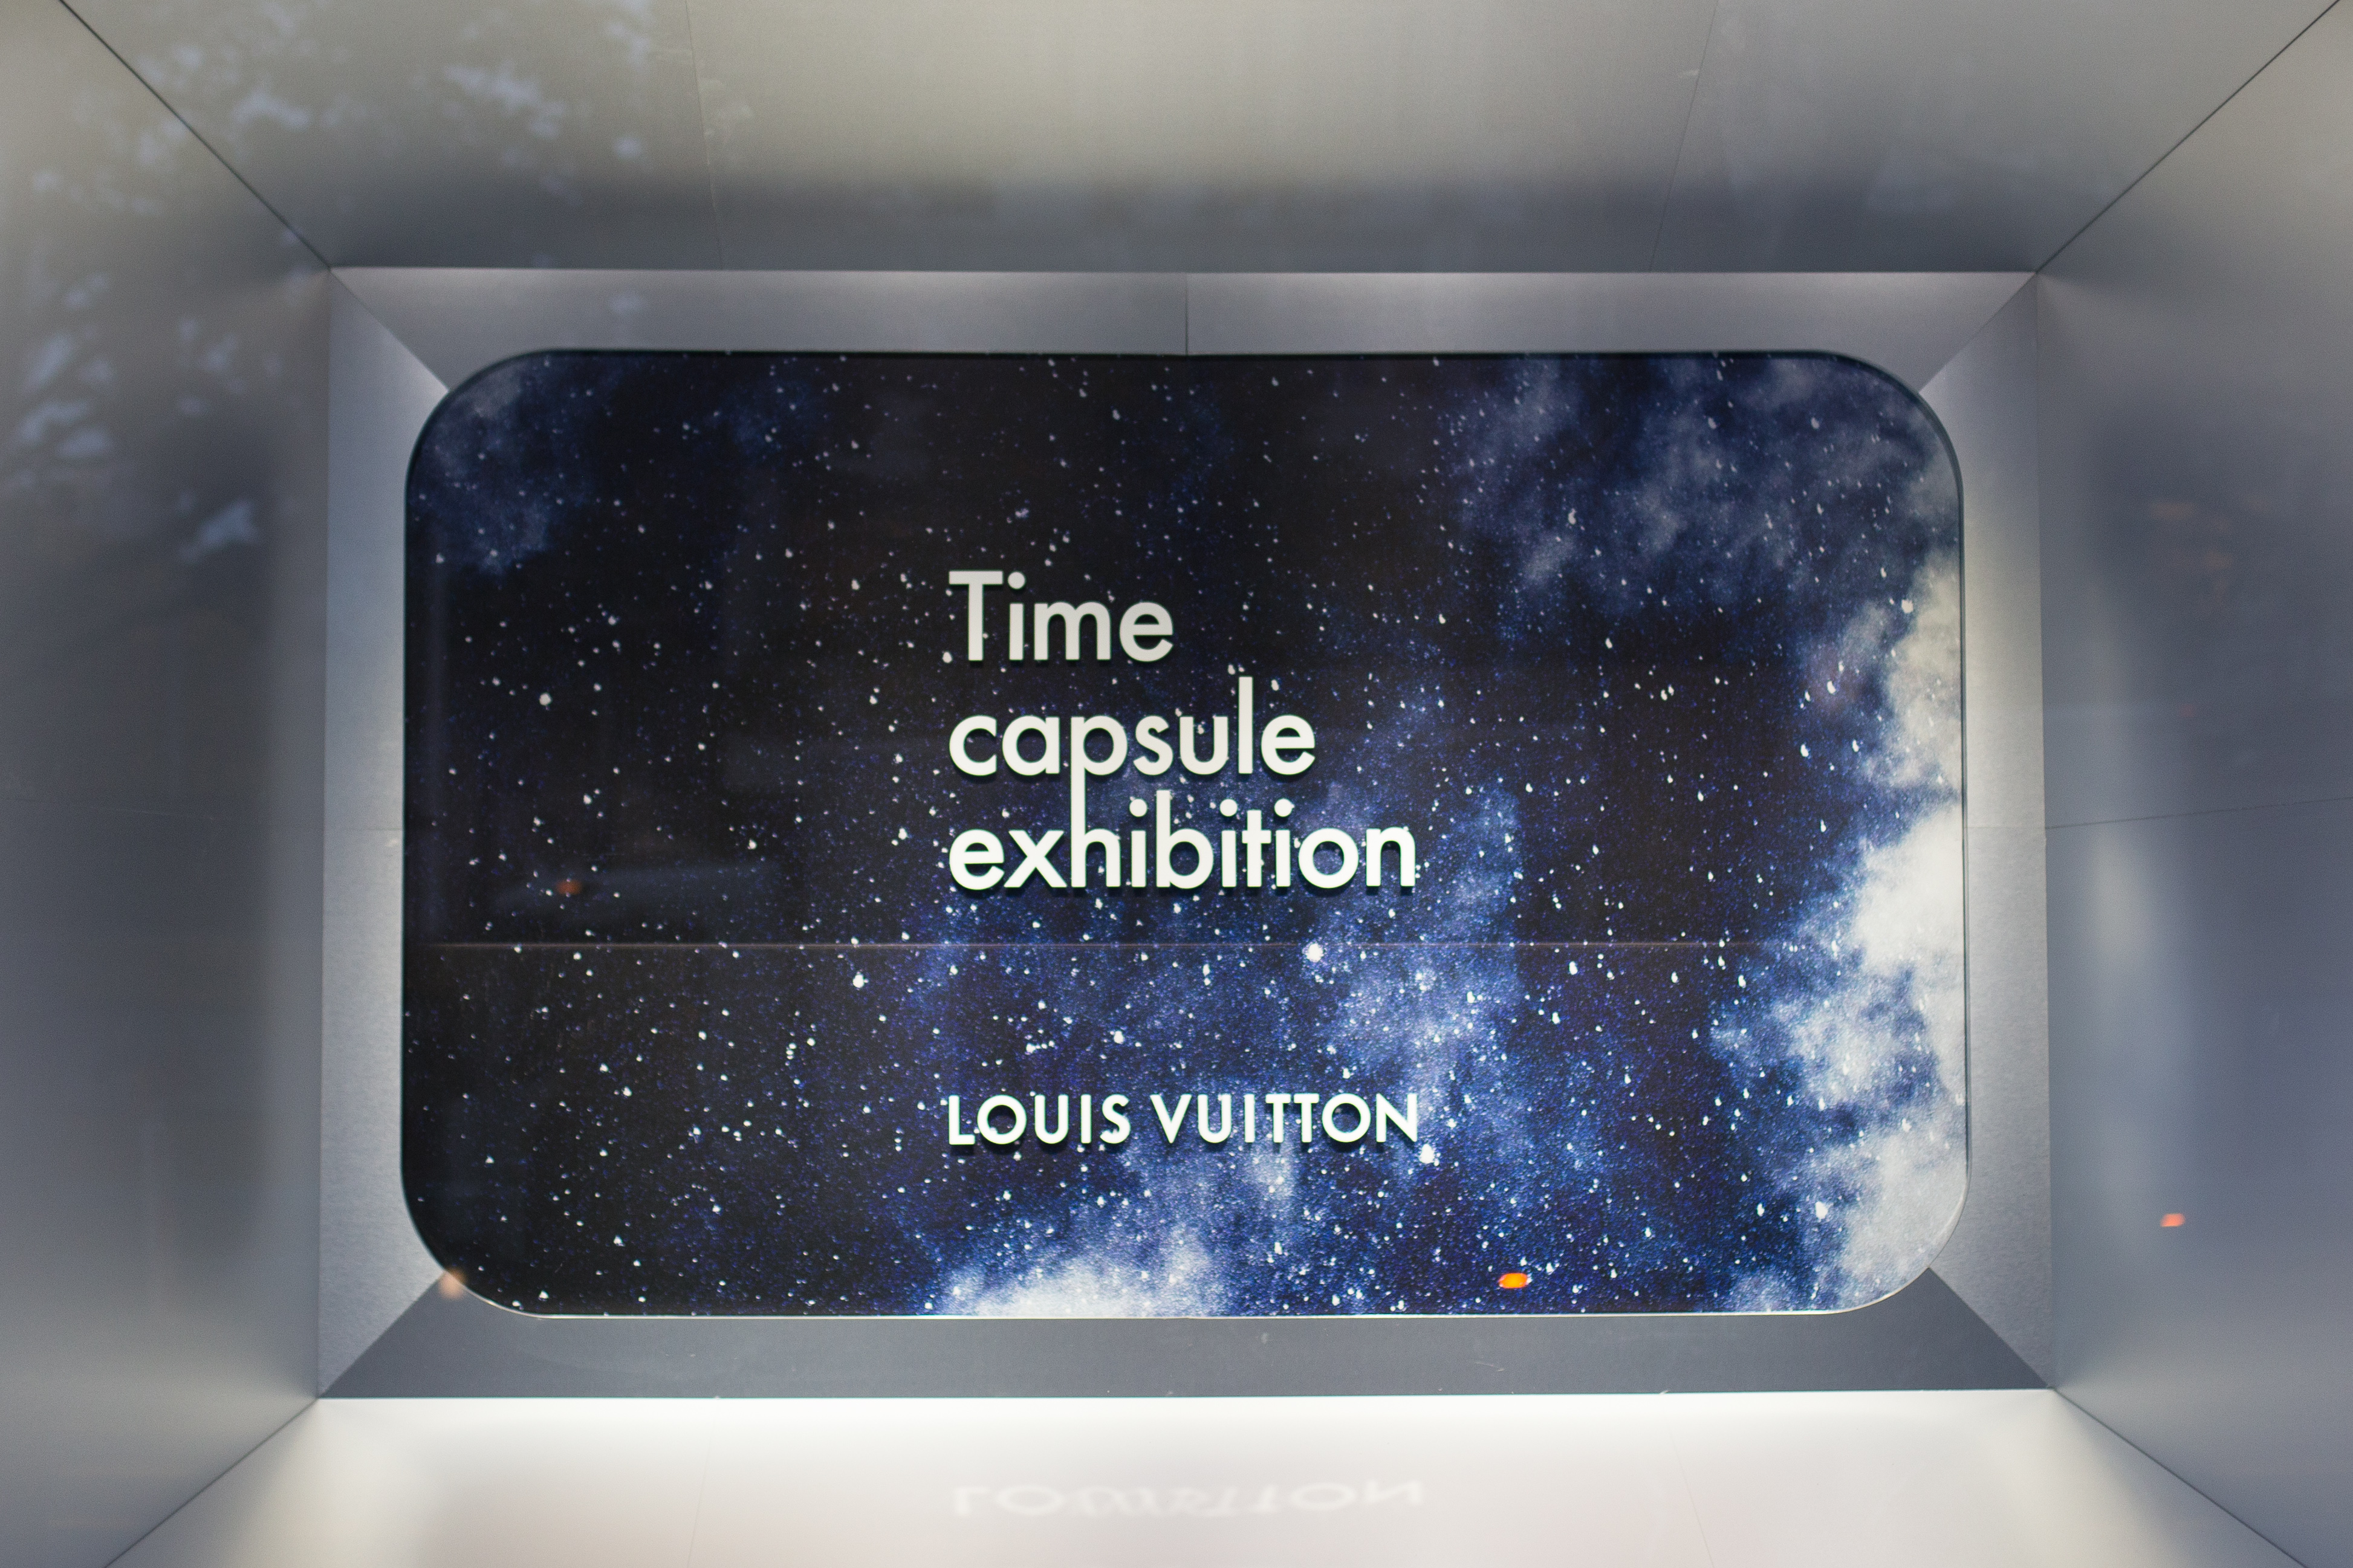 Visiting Louis Vuitton's Time Capsule Exhibition